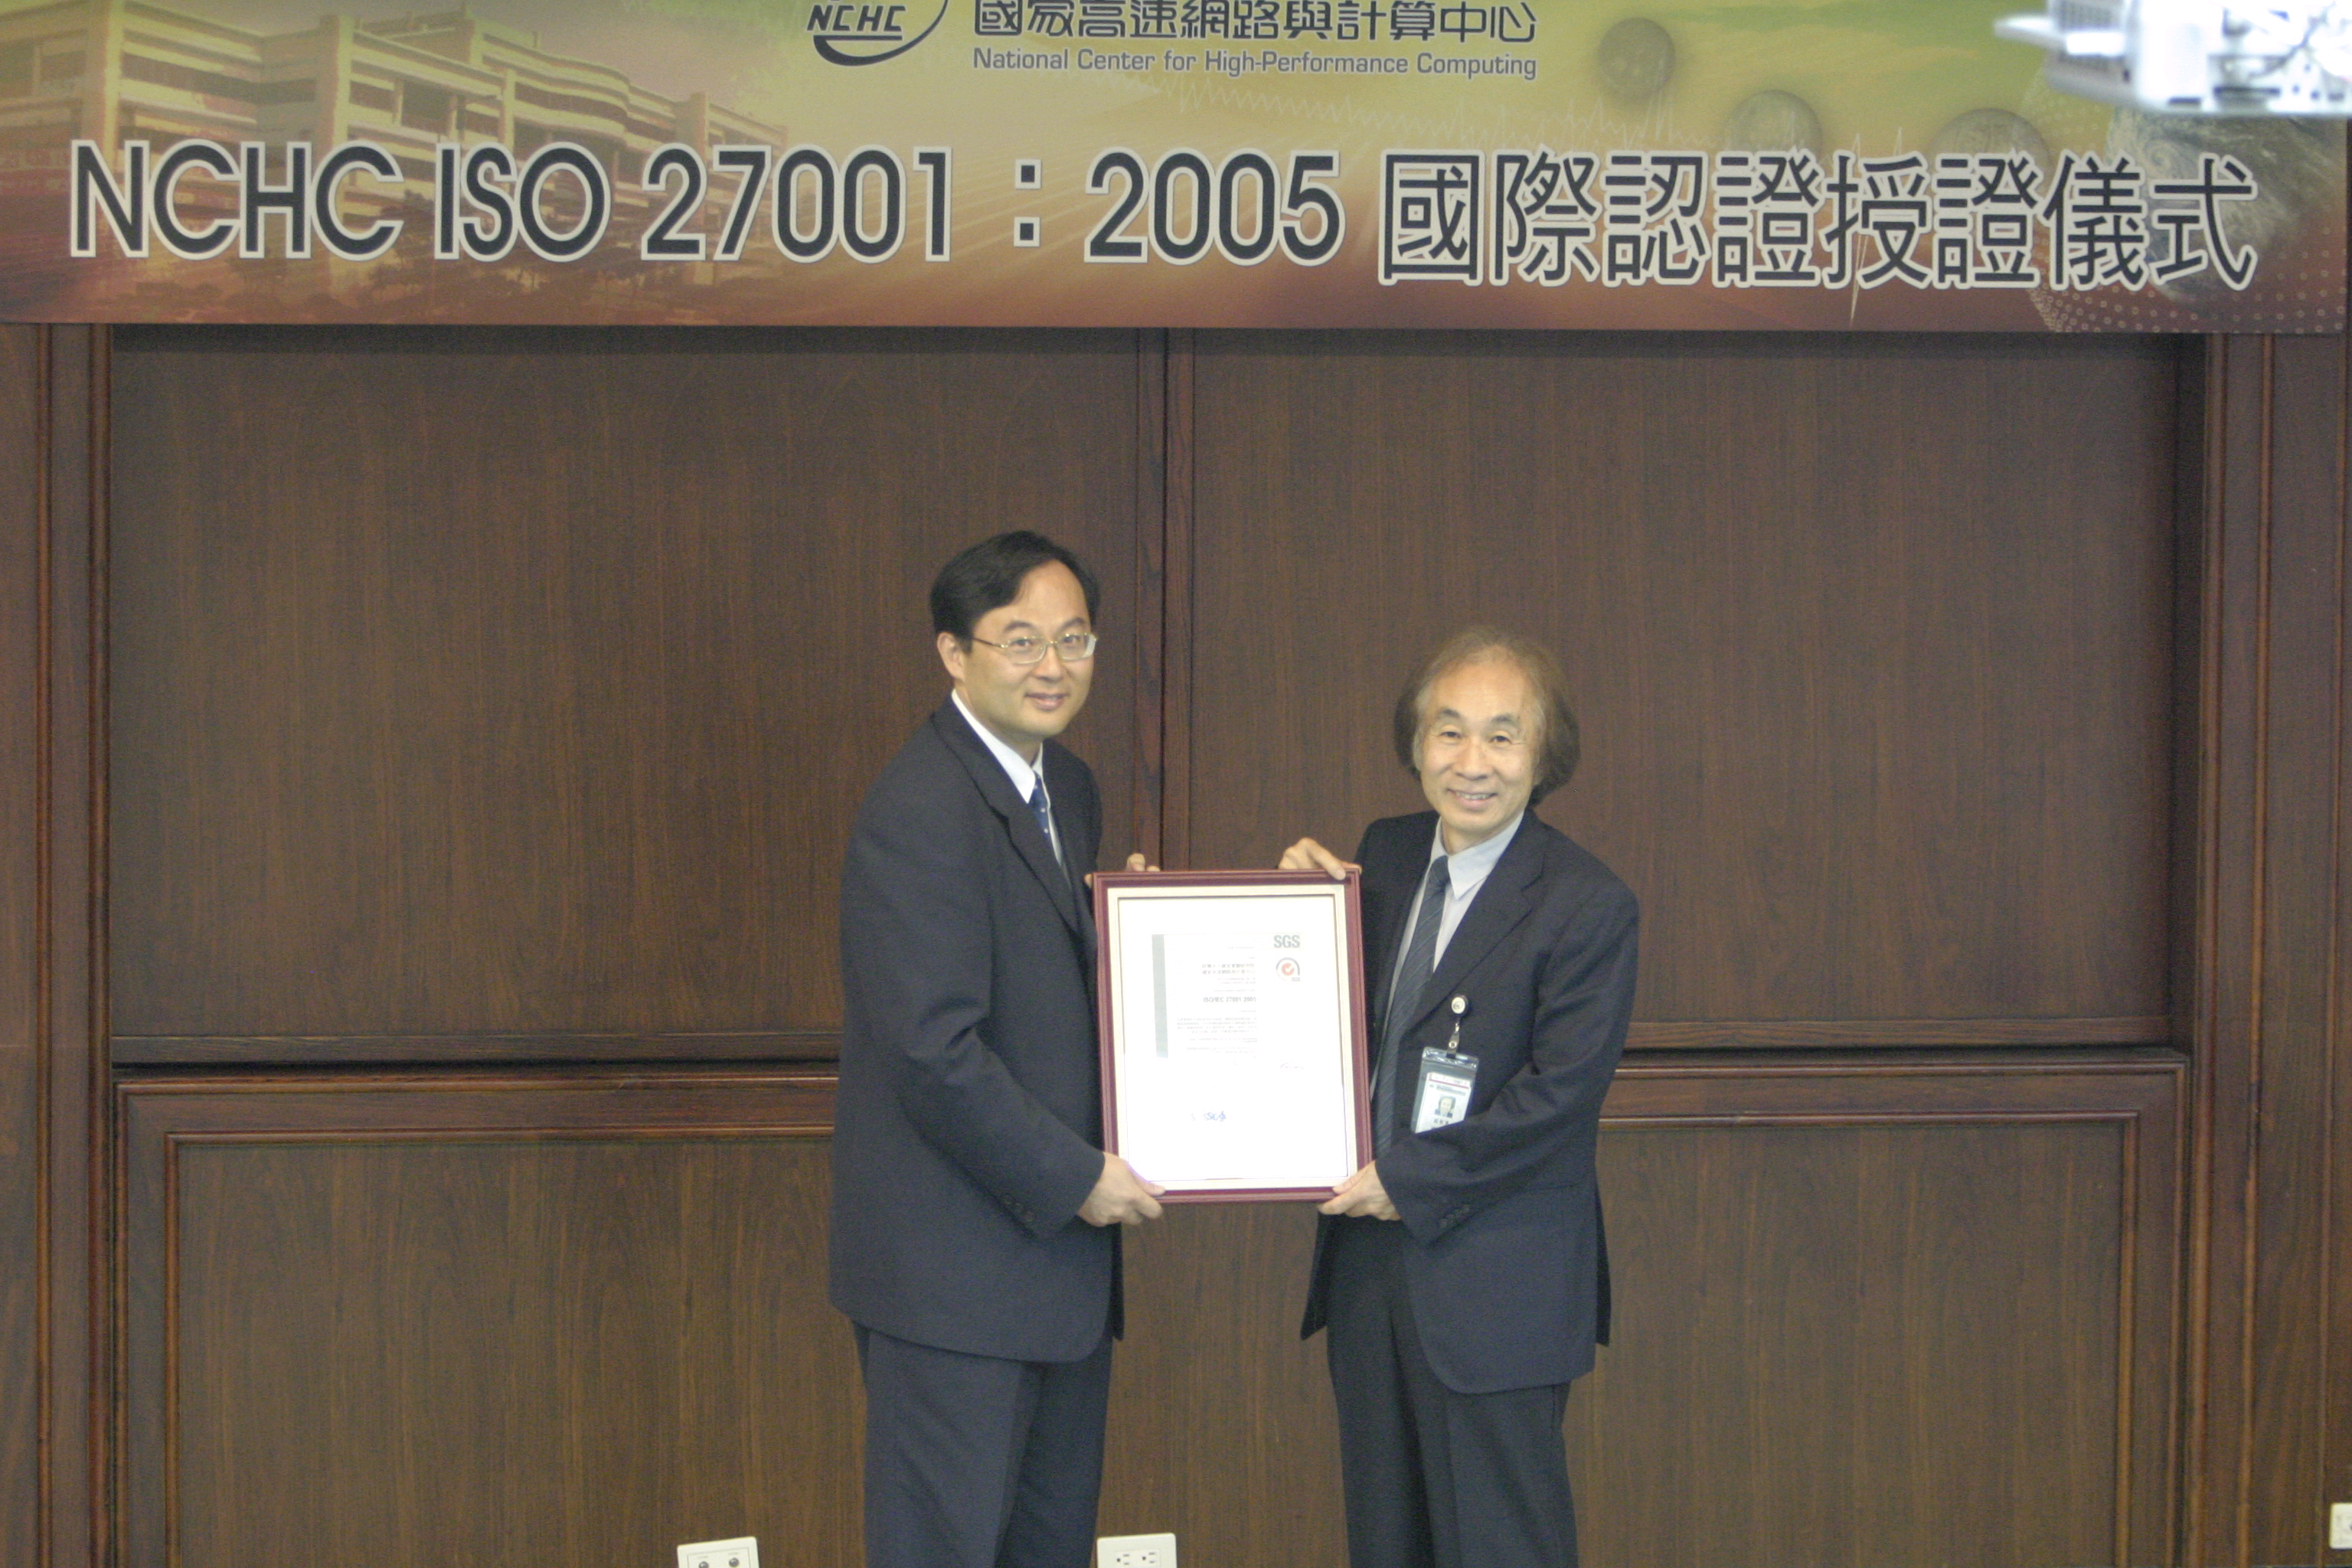 國網中心ISO 27001:2005國際認證授證典禮